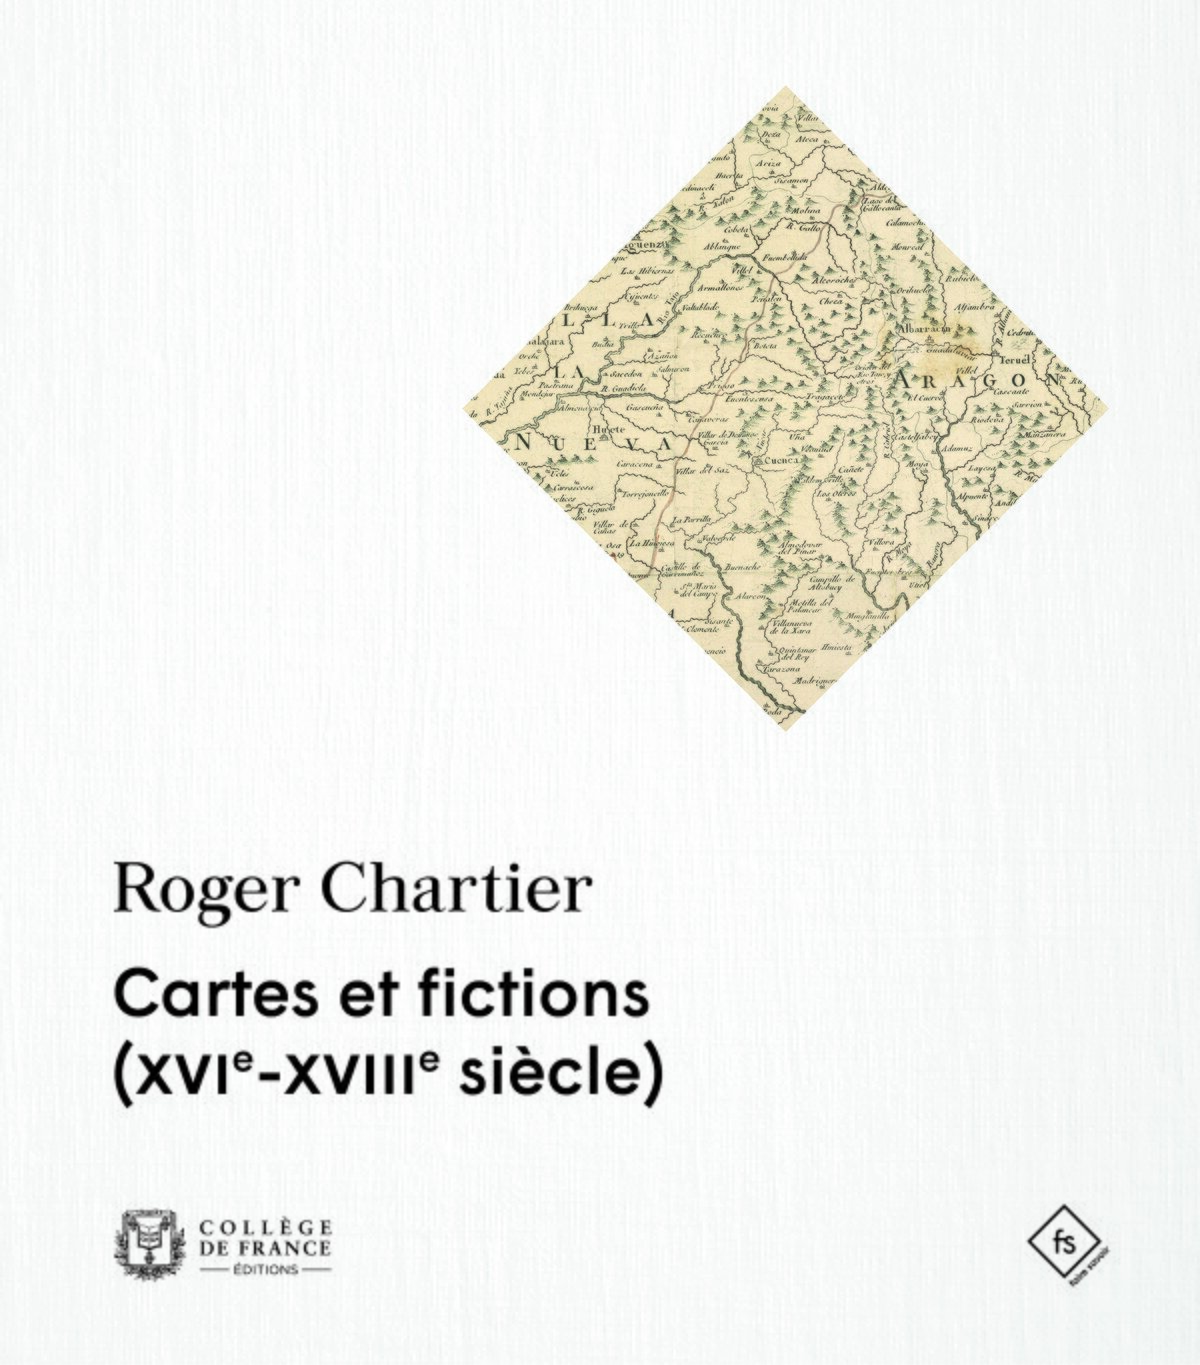 couverture Cartes et fictions, Roger Chartier